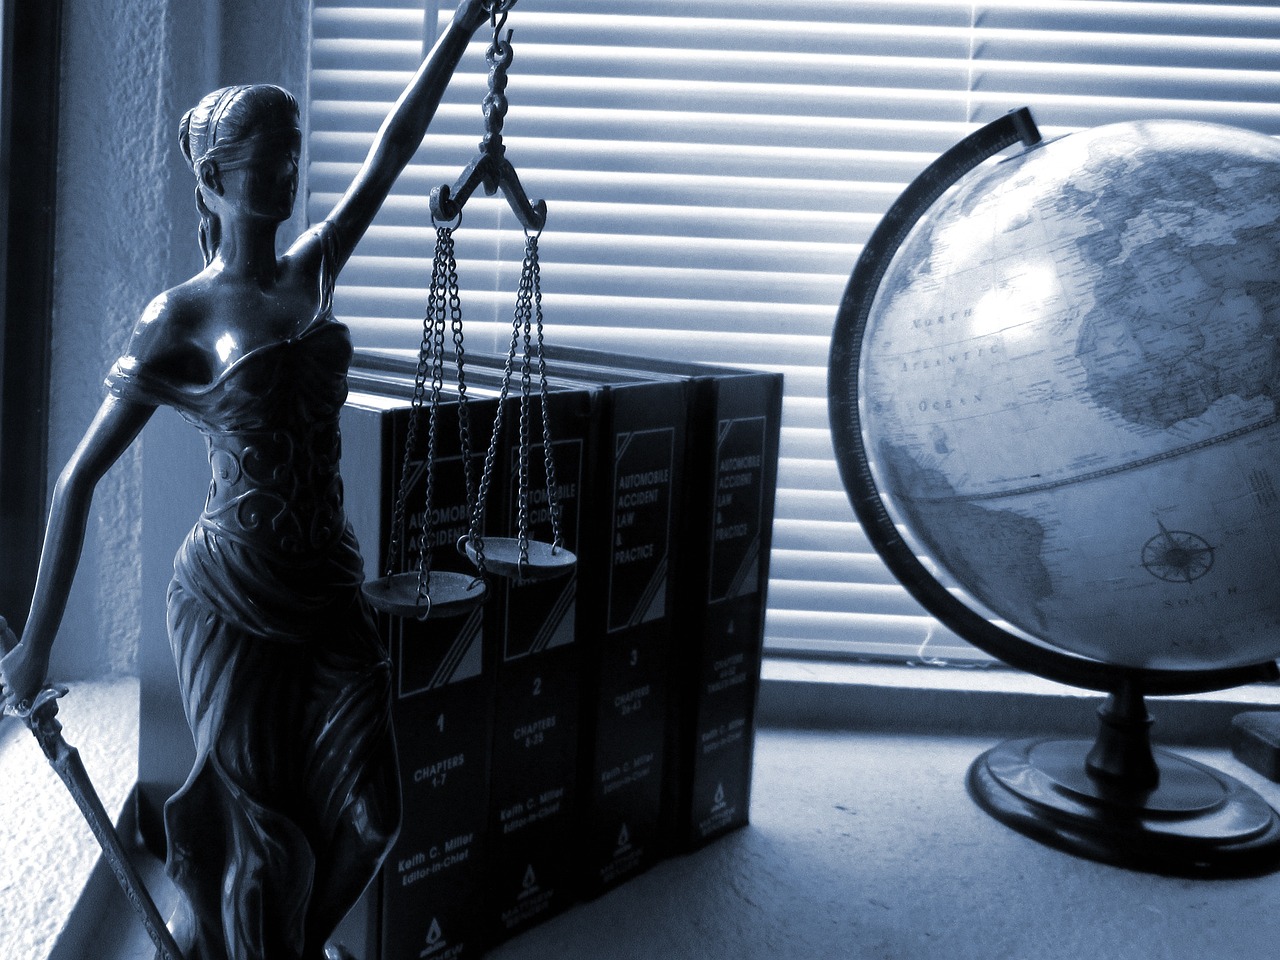 Kancelaria prawna a prawo rodzinne – jakie korzyści niesie współpraca z doświadczonymi prawnikami?